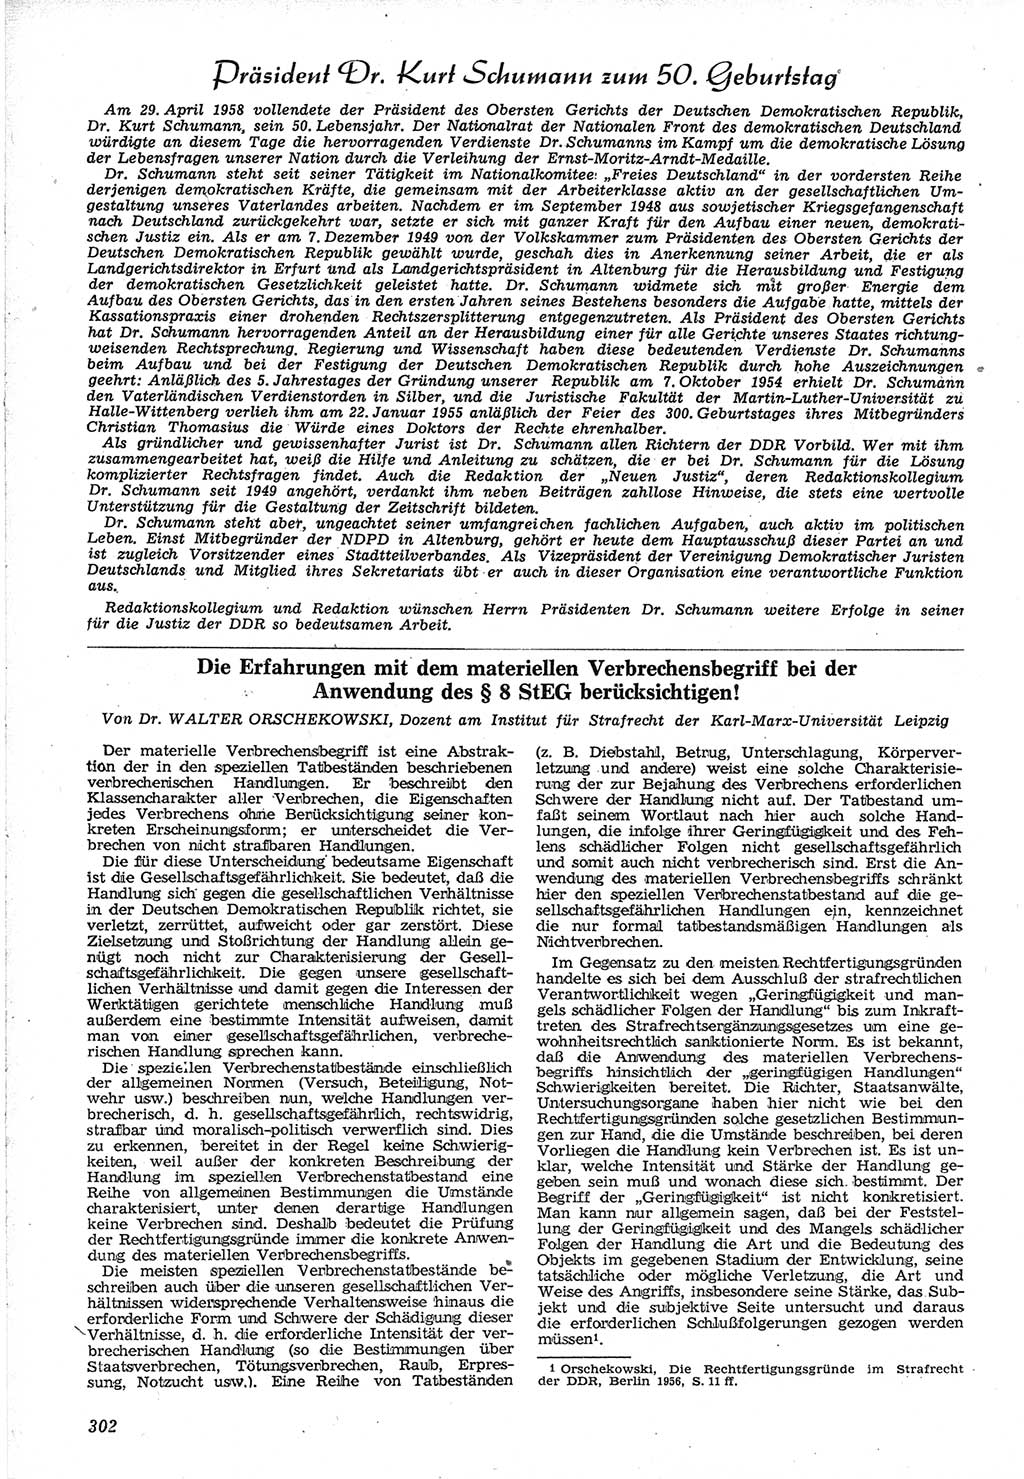 Neue Justiz (NJ), Zeitschrift für Recht und Rechtswissenschaft [Deutsche Demokratische Republik (DDR)], 12. Jahrgang 1958, Seite 302 (NJ DDR 1958, S. 302)